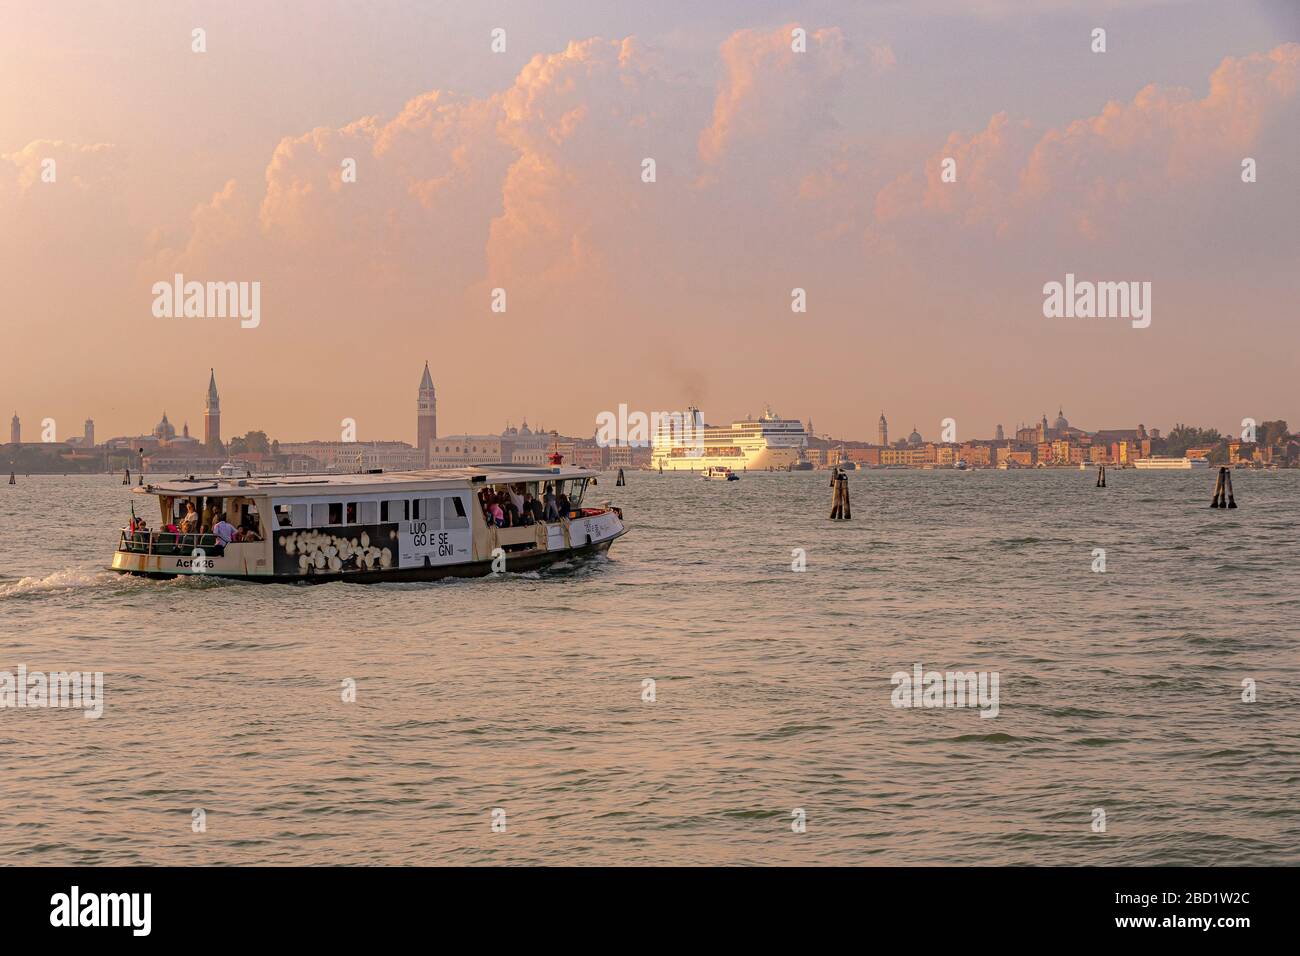 Ein Vaporetto, das Lido in Richtung Venedig verlässt, erscheint als großes Kreuzfahrtschiff in der Ferne, das die Lagune von Venedig, Venedig, Italien, überquert Stockfoto